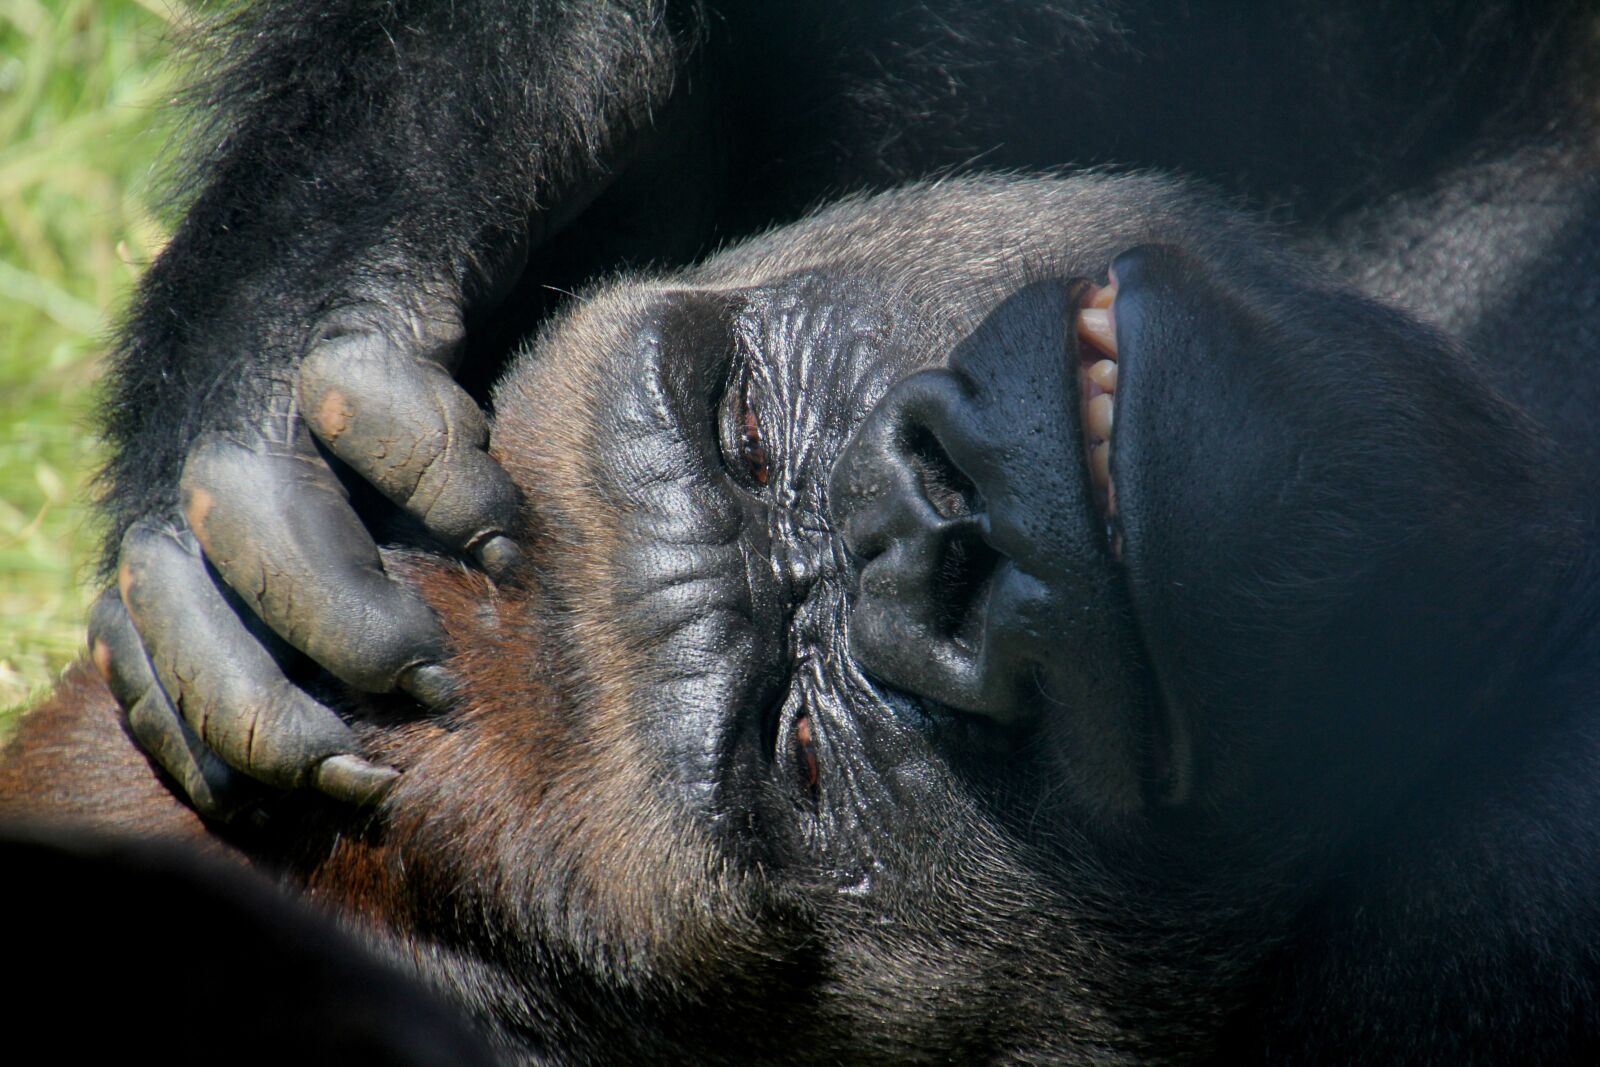 Canon EOS 60D sample photo. Look, gorilla, animal photography